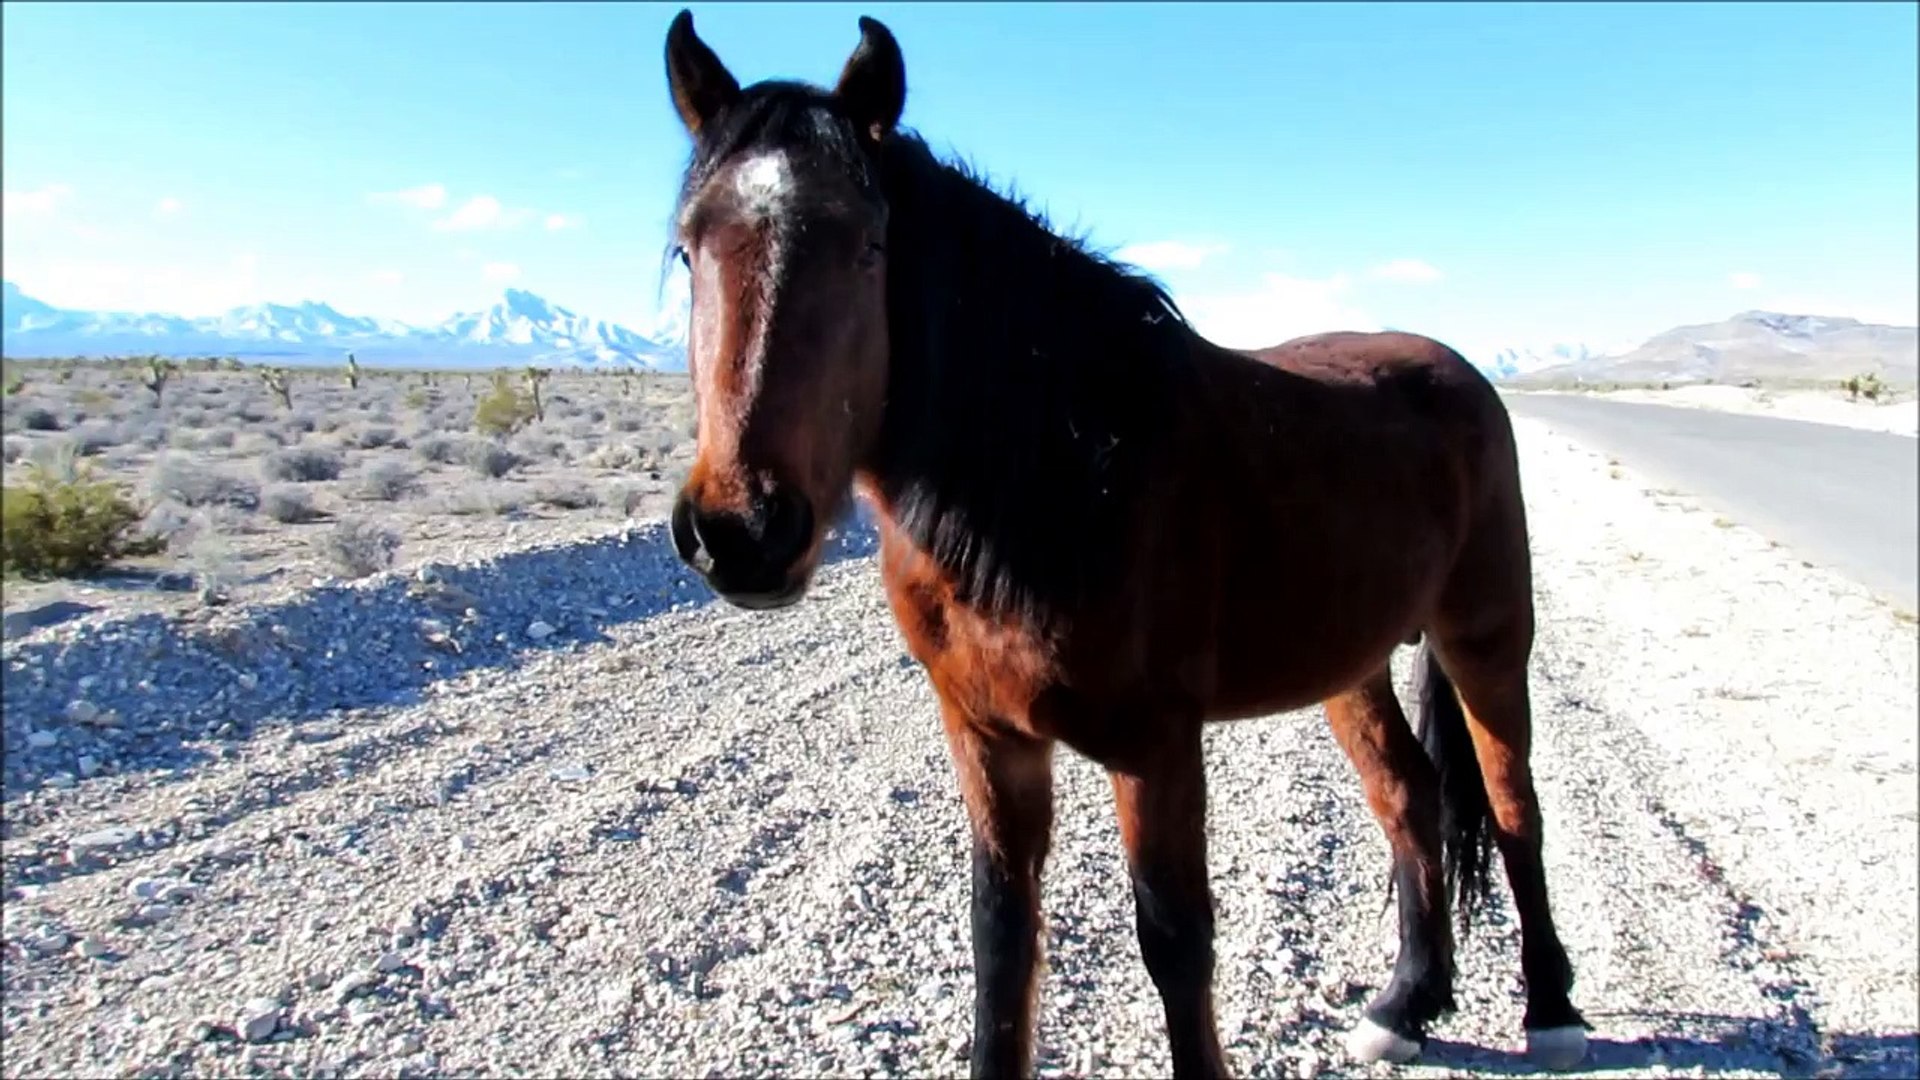 Short Video of Running Wild Horses